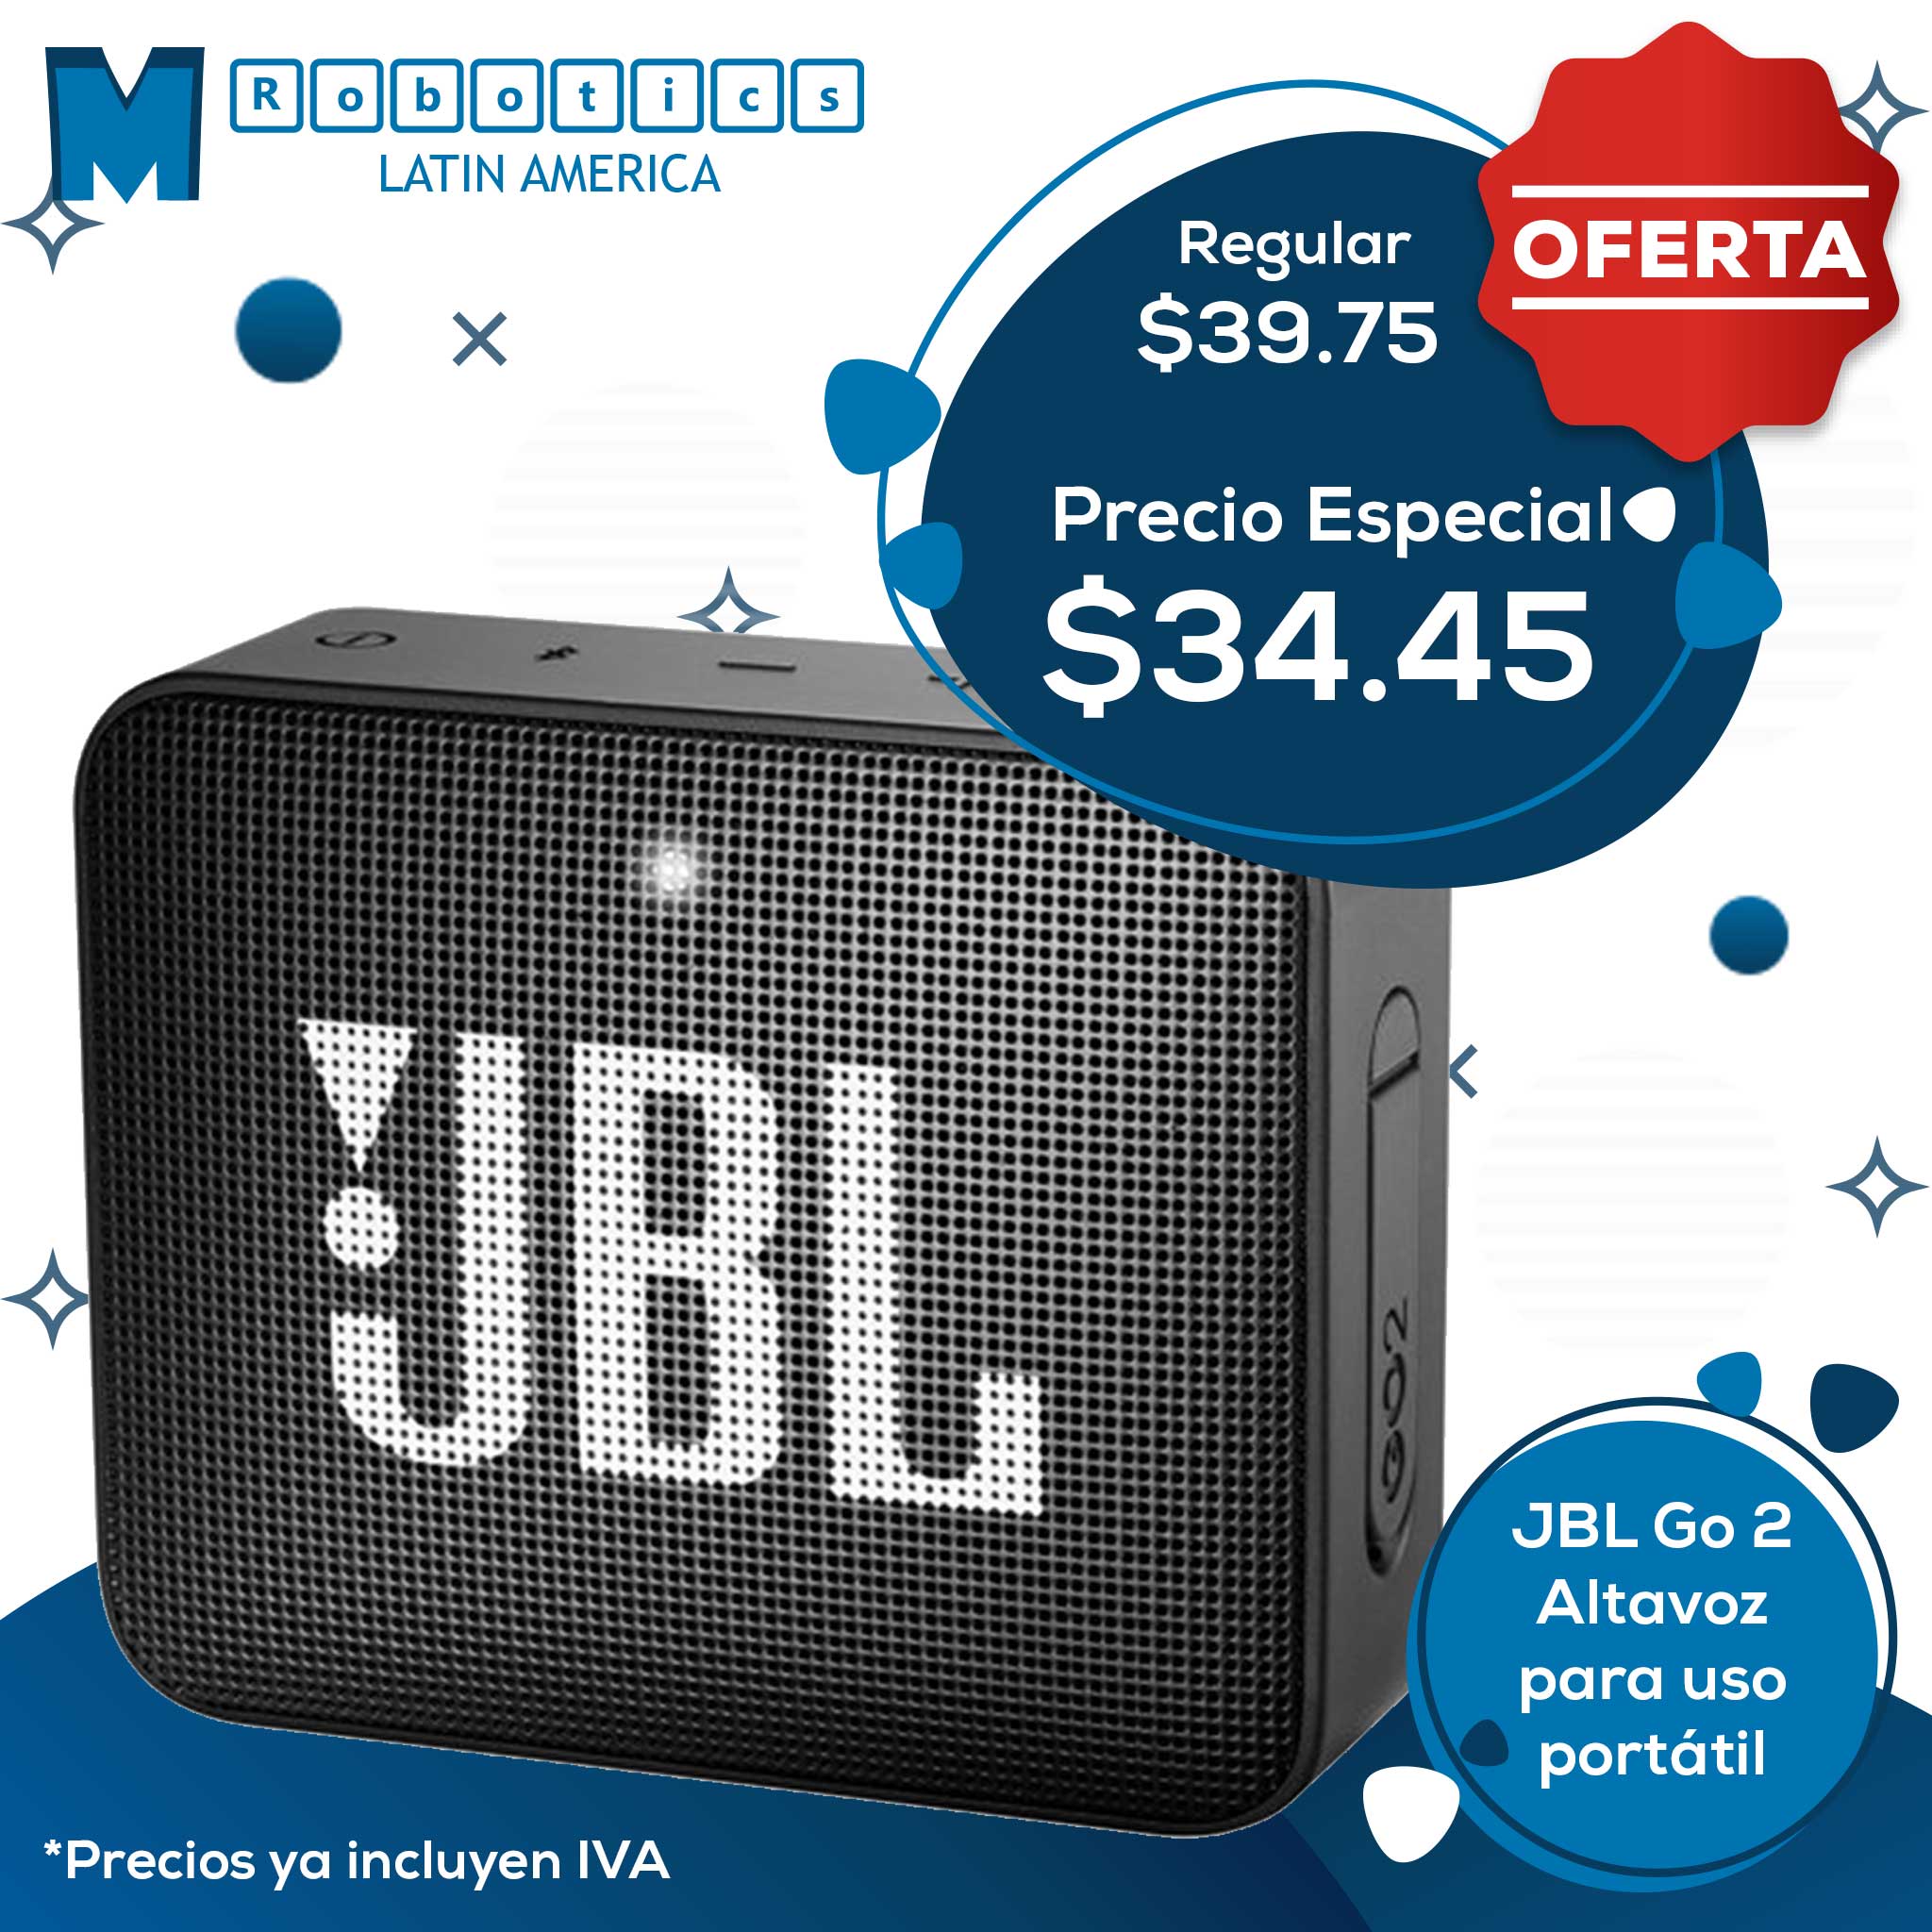 JBL Go 2 – Altavoz – para uso portátil